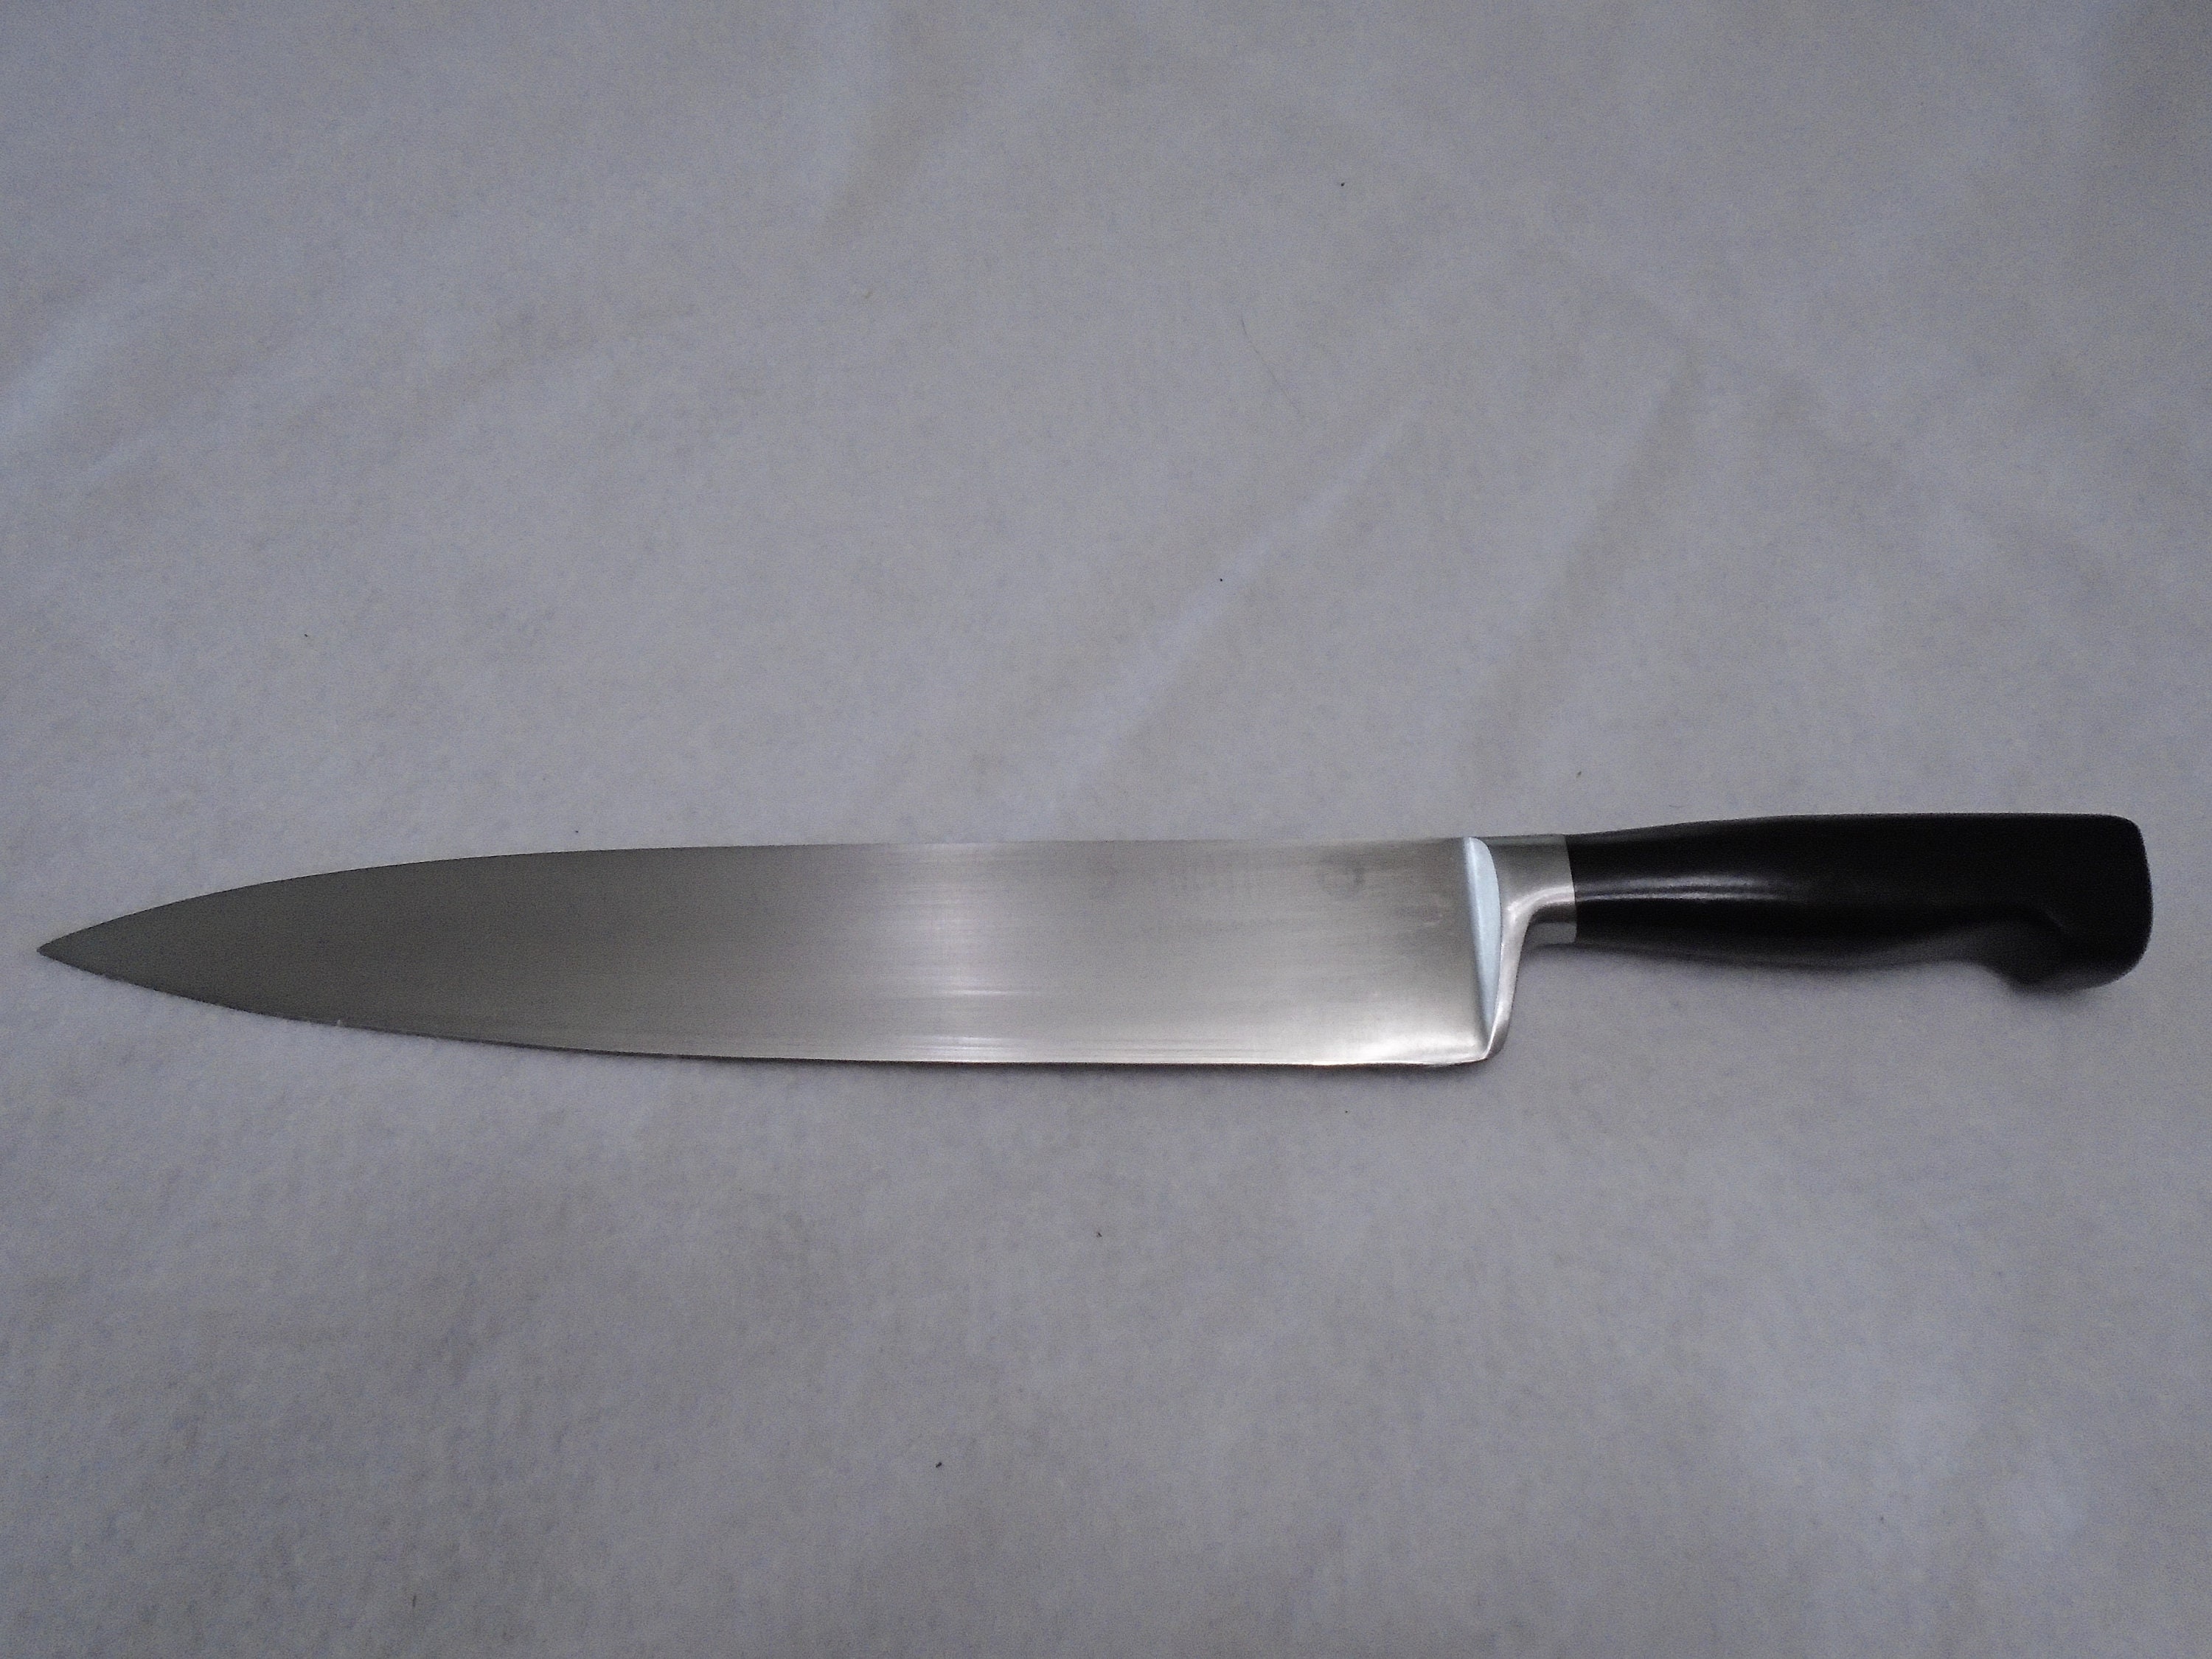 Standard Carving Knife Set – Sabatier Knife Shop